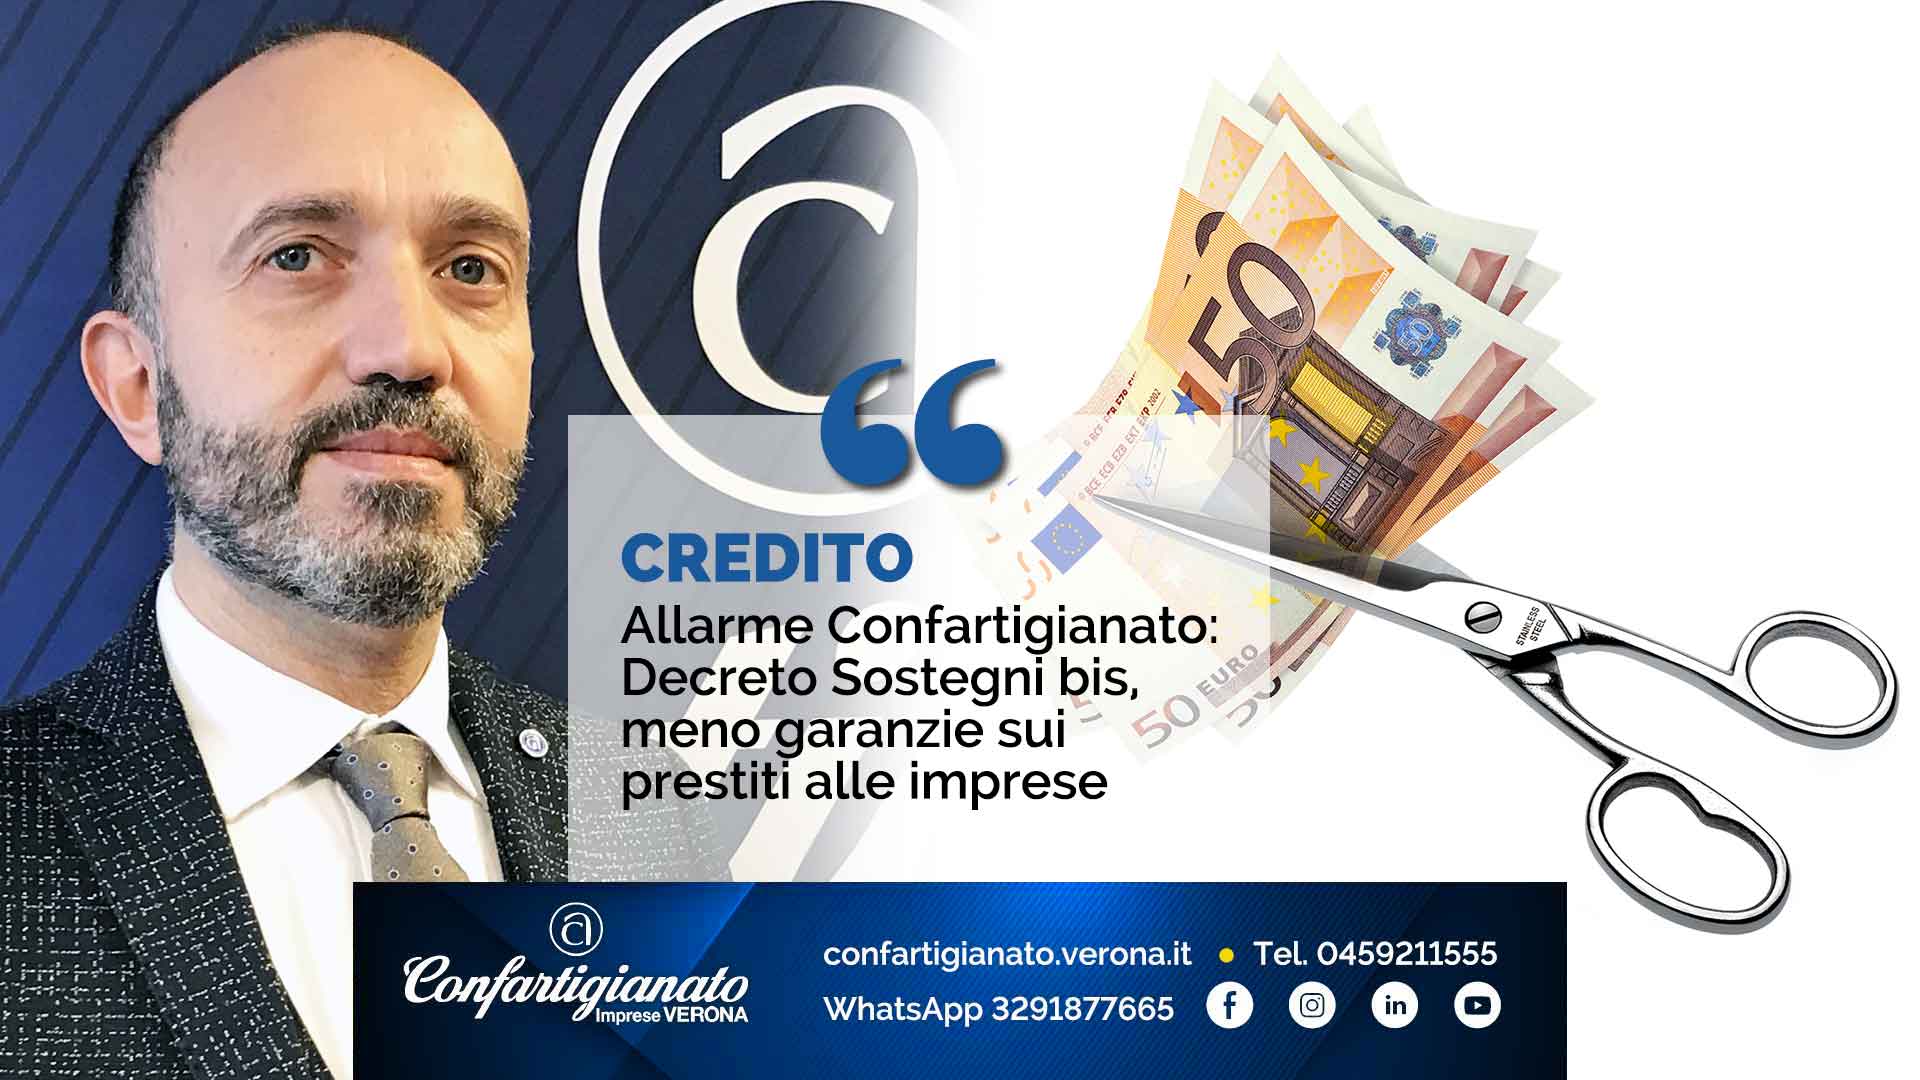 CREDITO – Allarme Confartigianato: Decreto Sostegni bis, meno garanzie sui prestiti alle imprese